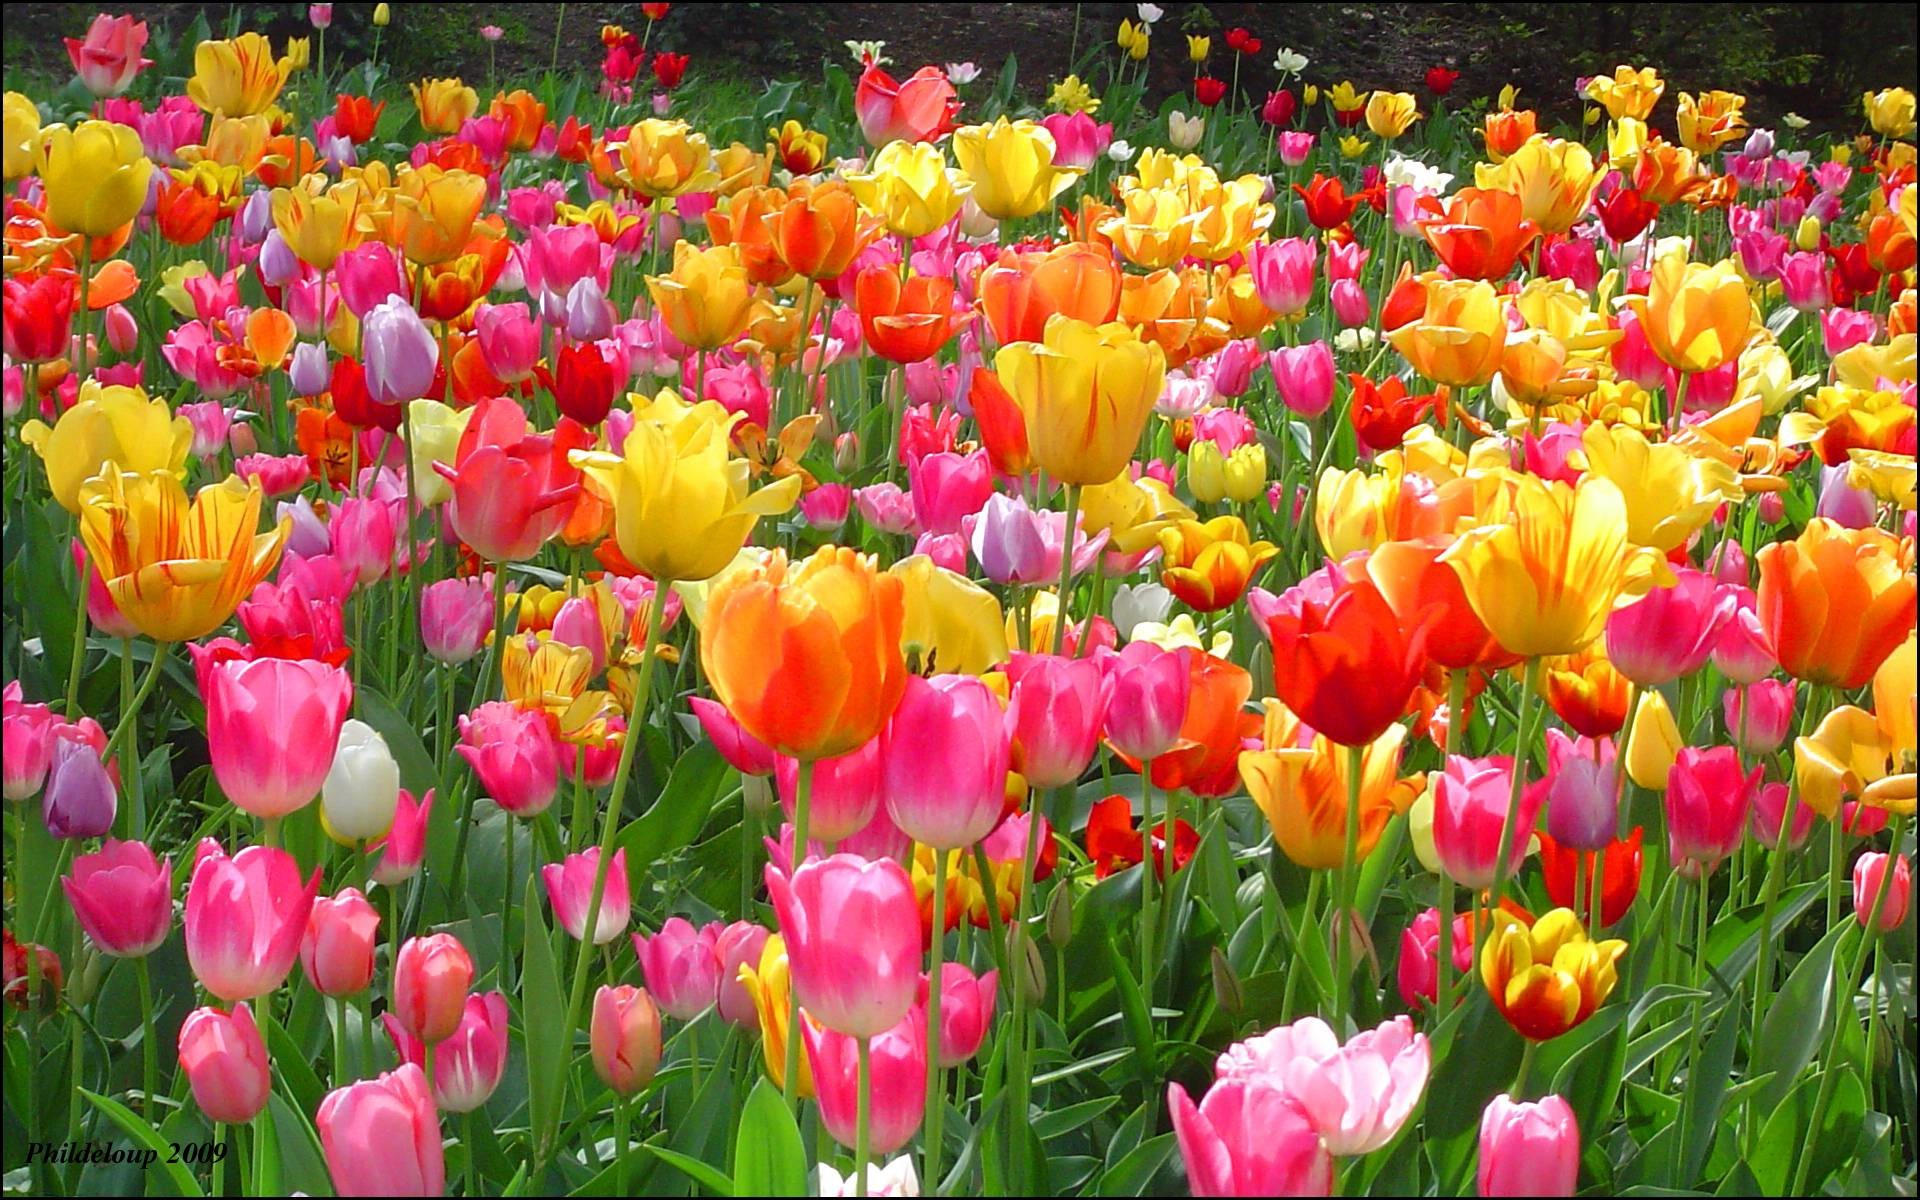 Hình nền hoa tulip (Tulip flower wallpaper): Màu sắc tươi sáng và hình dáng độc đáo của hoa tulip sẽ khiến hình nền điện thoại hoặc máy tính của bạn trở nên đẹp mắt hơn bao giờ hết. Nhấn vào ảnh để tải về và thay đổi hình nền của bạn ngay hôm nay.